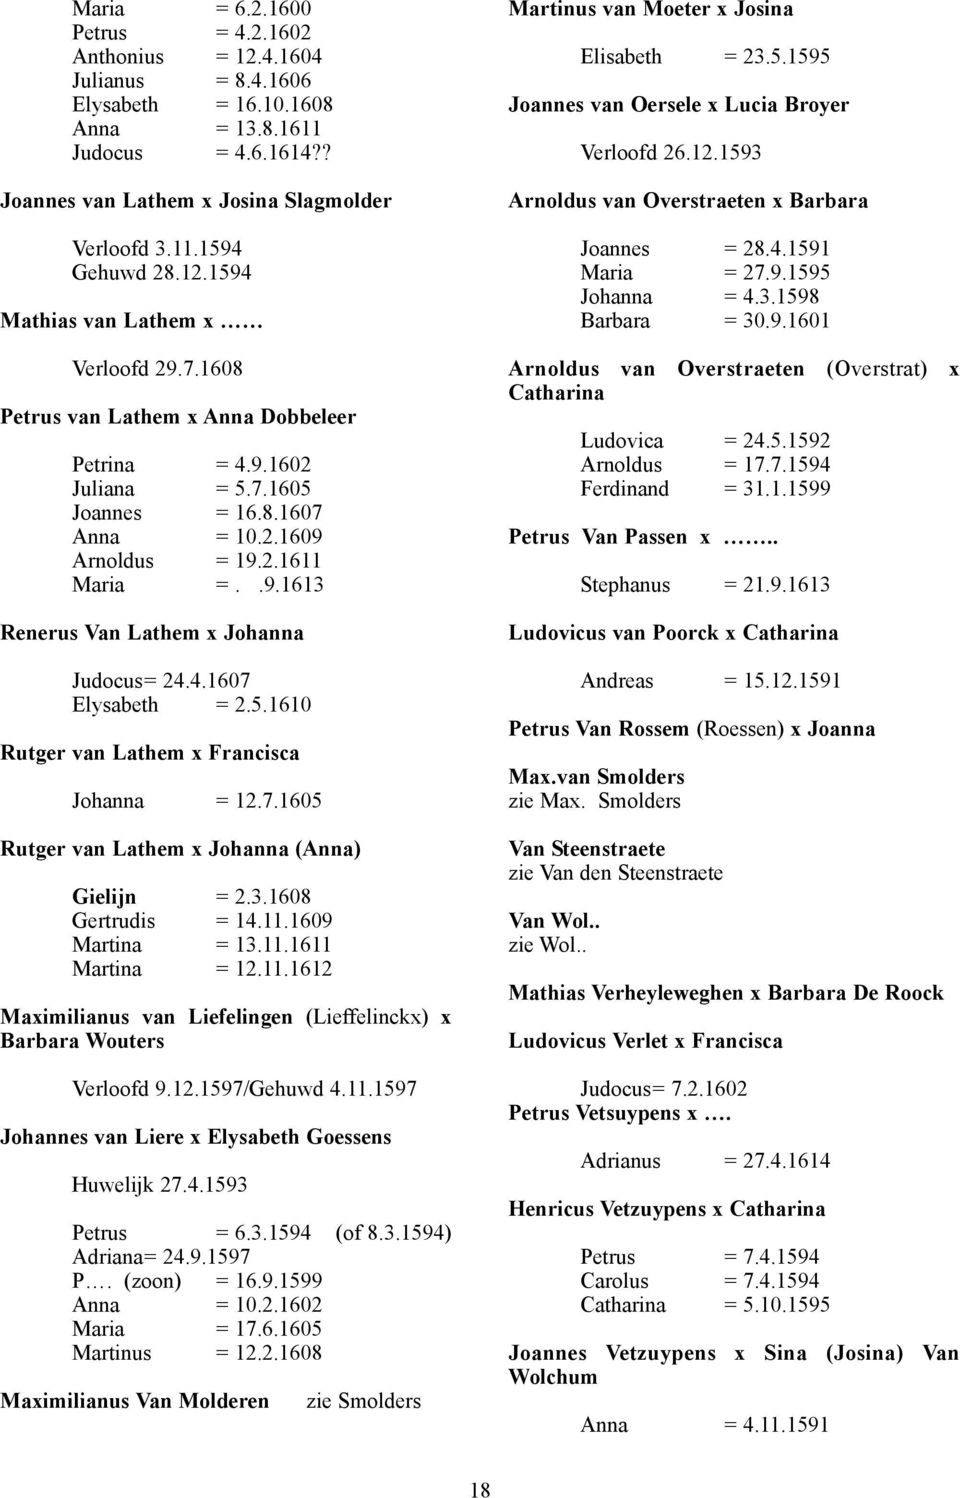 4.1607 Elysabeth = 2.5.1610 Rutger van Lathem x Francisca Johanna = 12.7.1605 Rutger van Lathem x Johanna (Anna) Gielijn = 2.3.1608 Gertrudis = 14.11.